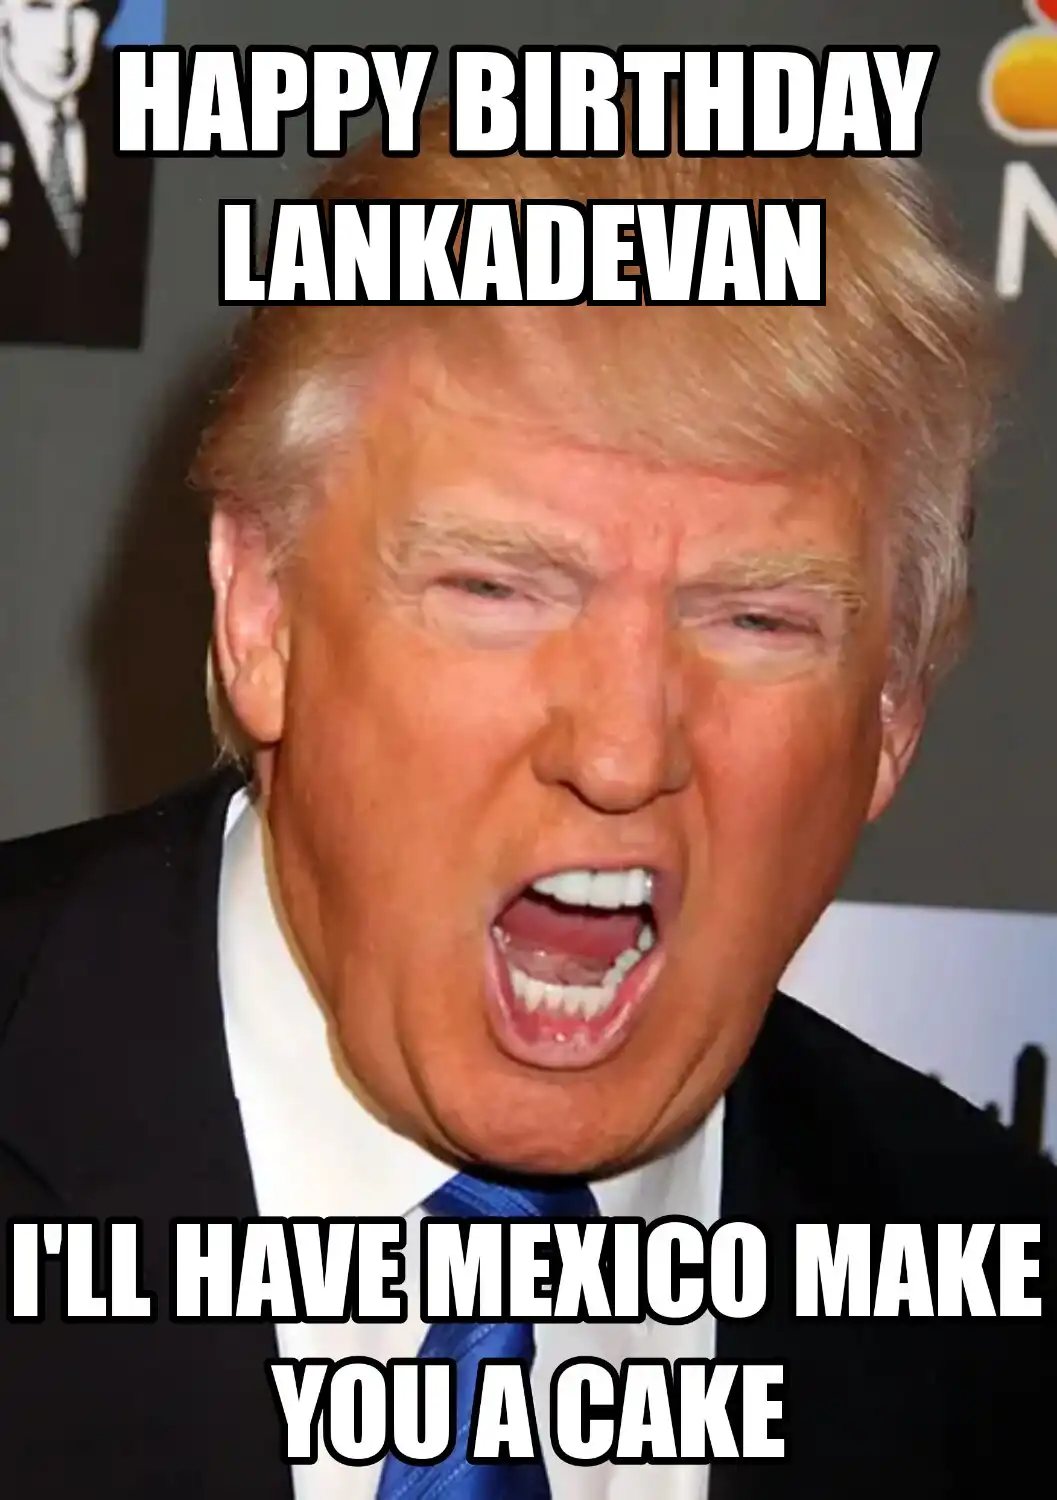 Happy Birthday Lankadevan Mexico Make You A Cake Meme